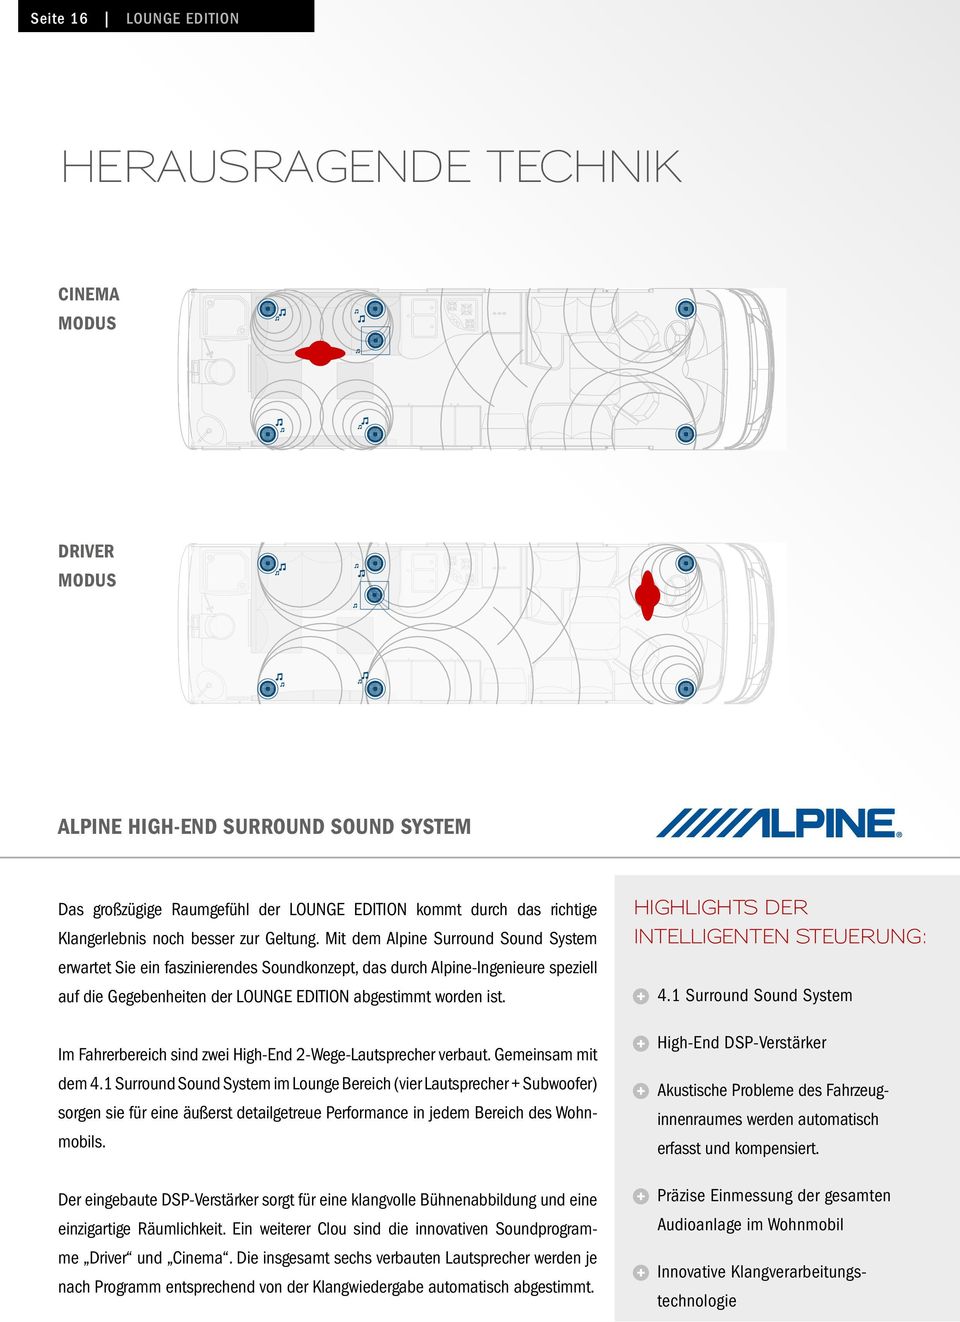 Mit dem Alpine Surround Sound System erwartet Sie ein faszinierendes Soundkonzept, das durch Alpine-Ingenieure speziell auf die Gegebenheiten der LOUNGE EDITION abgestimmt worden ist.